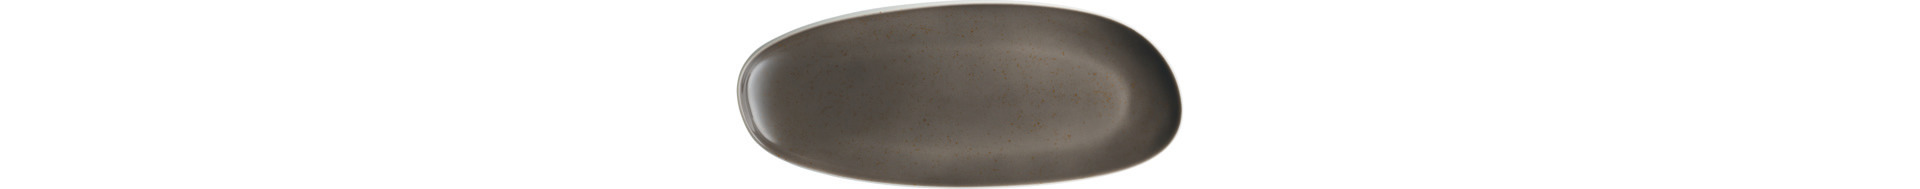 Coupplatte oval 179 x 88 mm Unique dunkelgrau